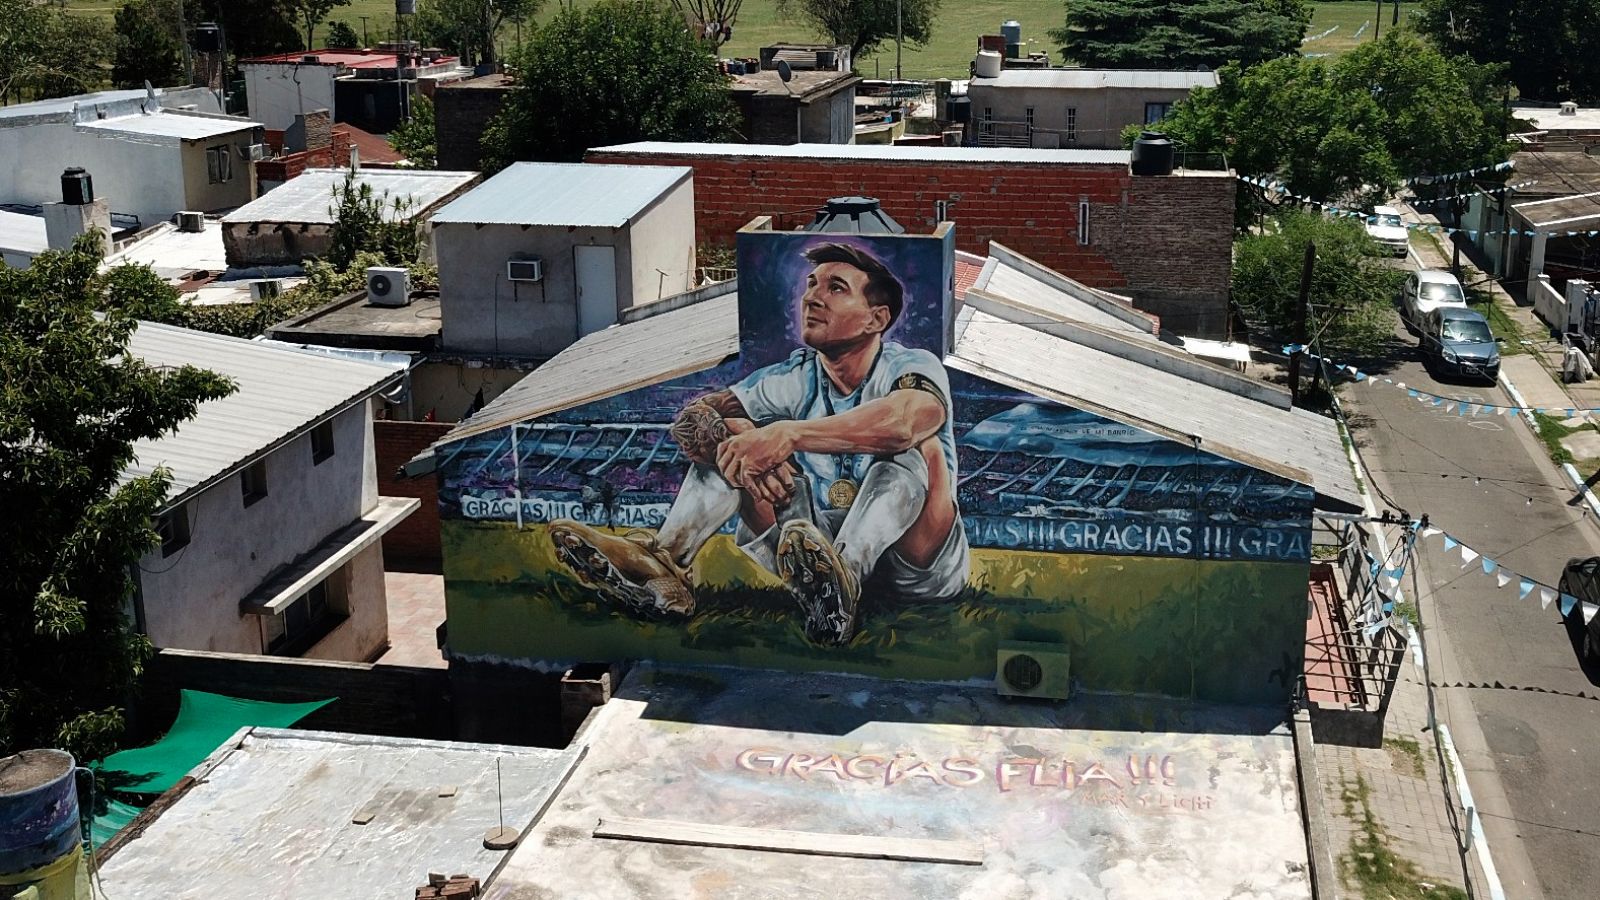 La ciudad de Rosario se vuelca con Messi, su hijo pródigo